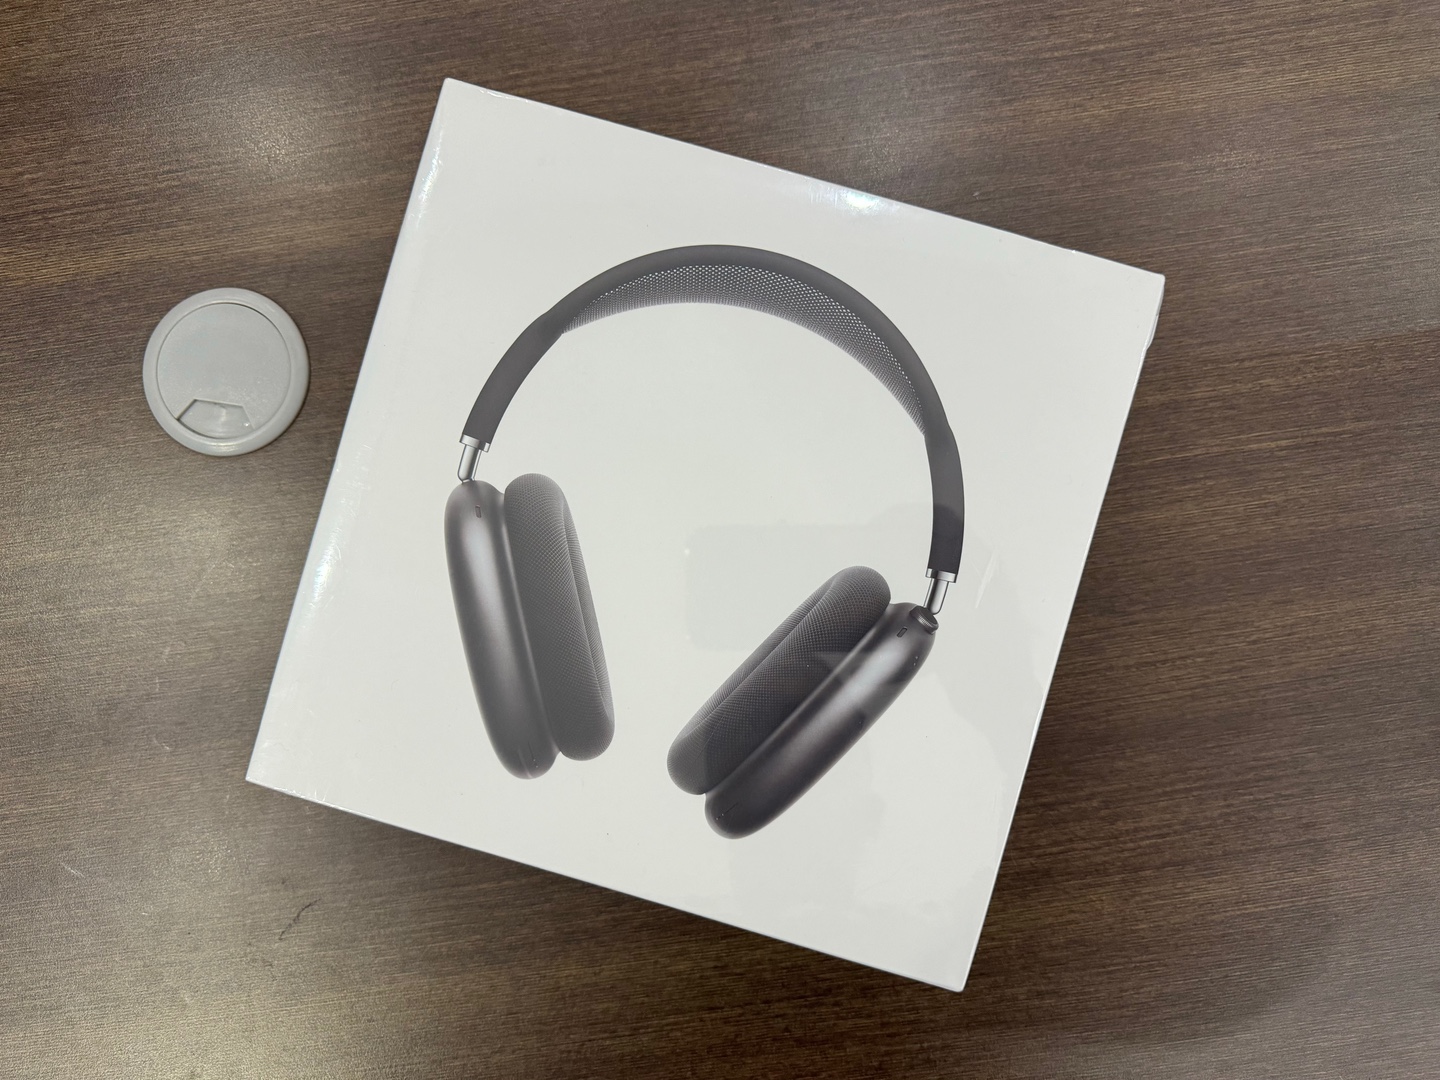 camaras y audio - AirPods Max Nuevos Sellados by Apple, Color: Space Gray, Originales, RD$ 29,500  0